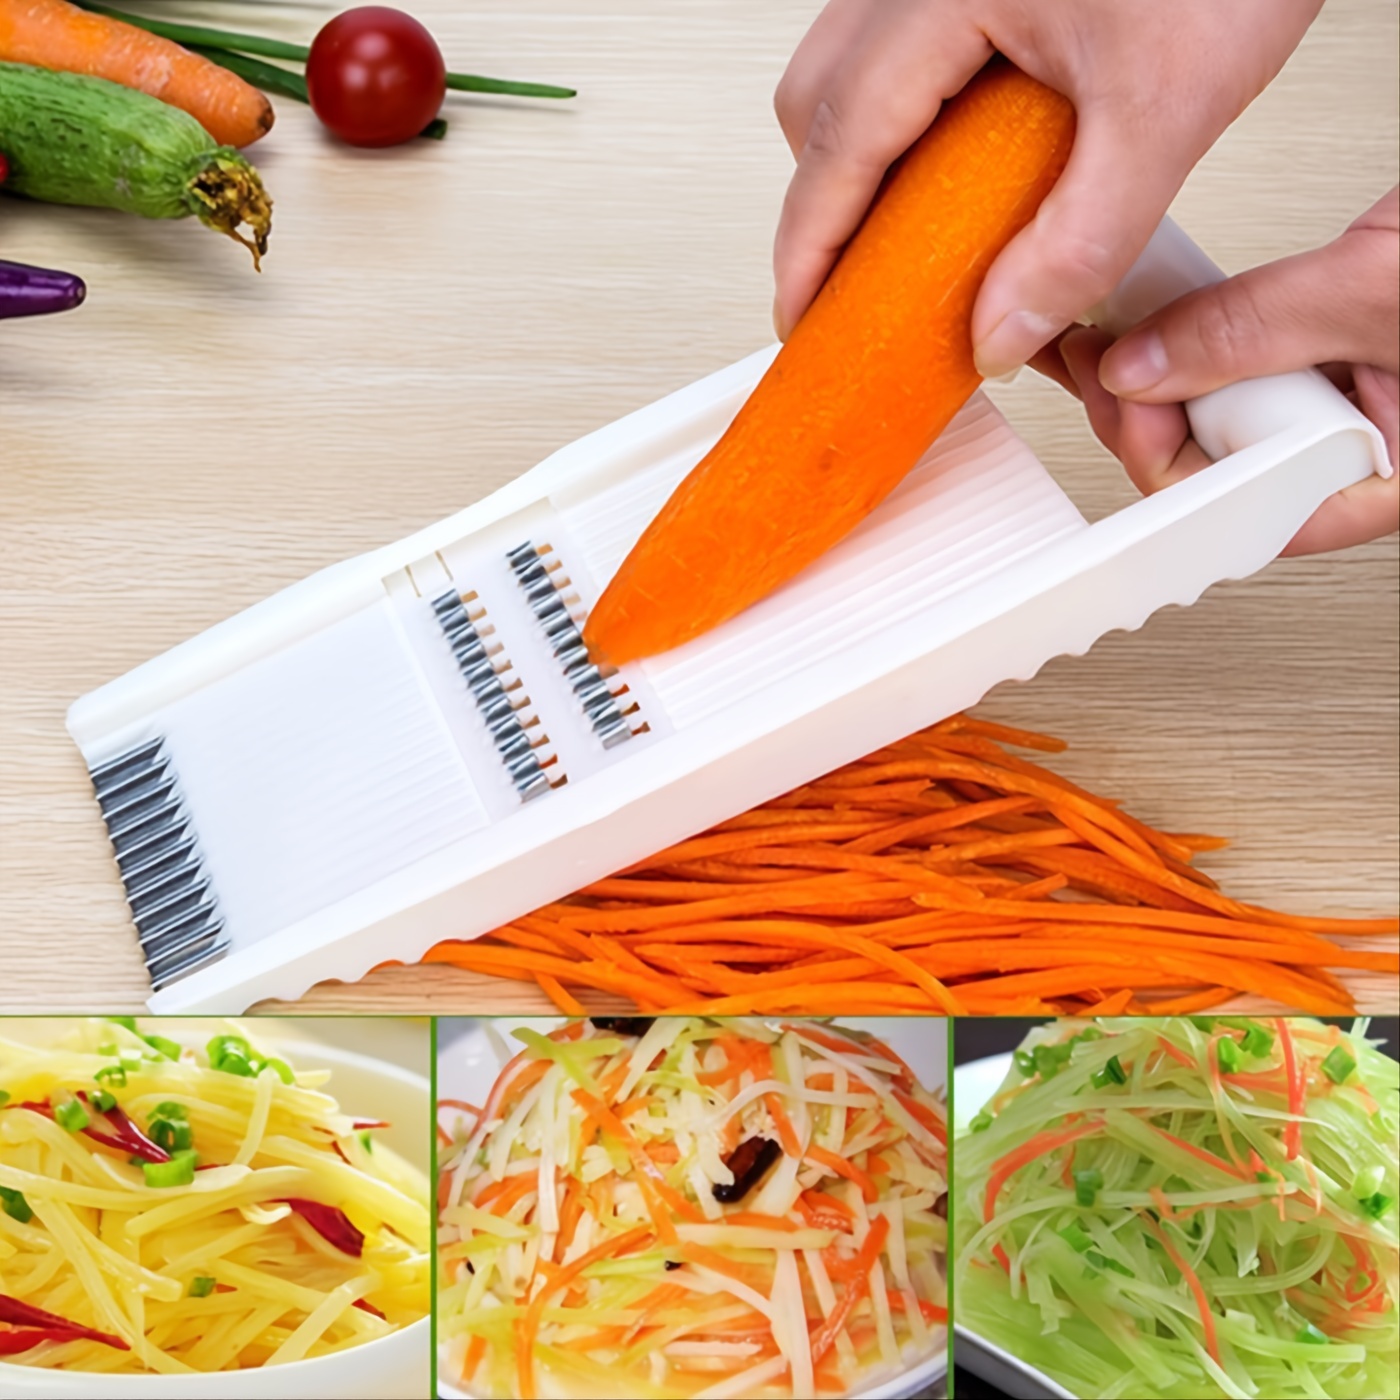 Coupe-chou, couteau à éplucher de légumes, coupe-légumes, râpe à choux